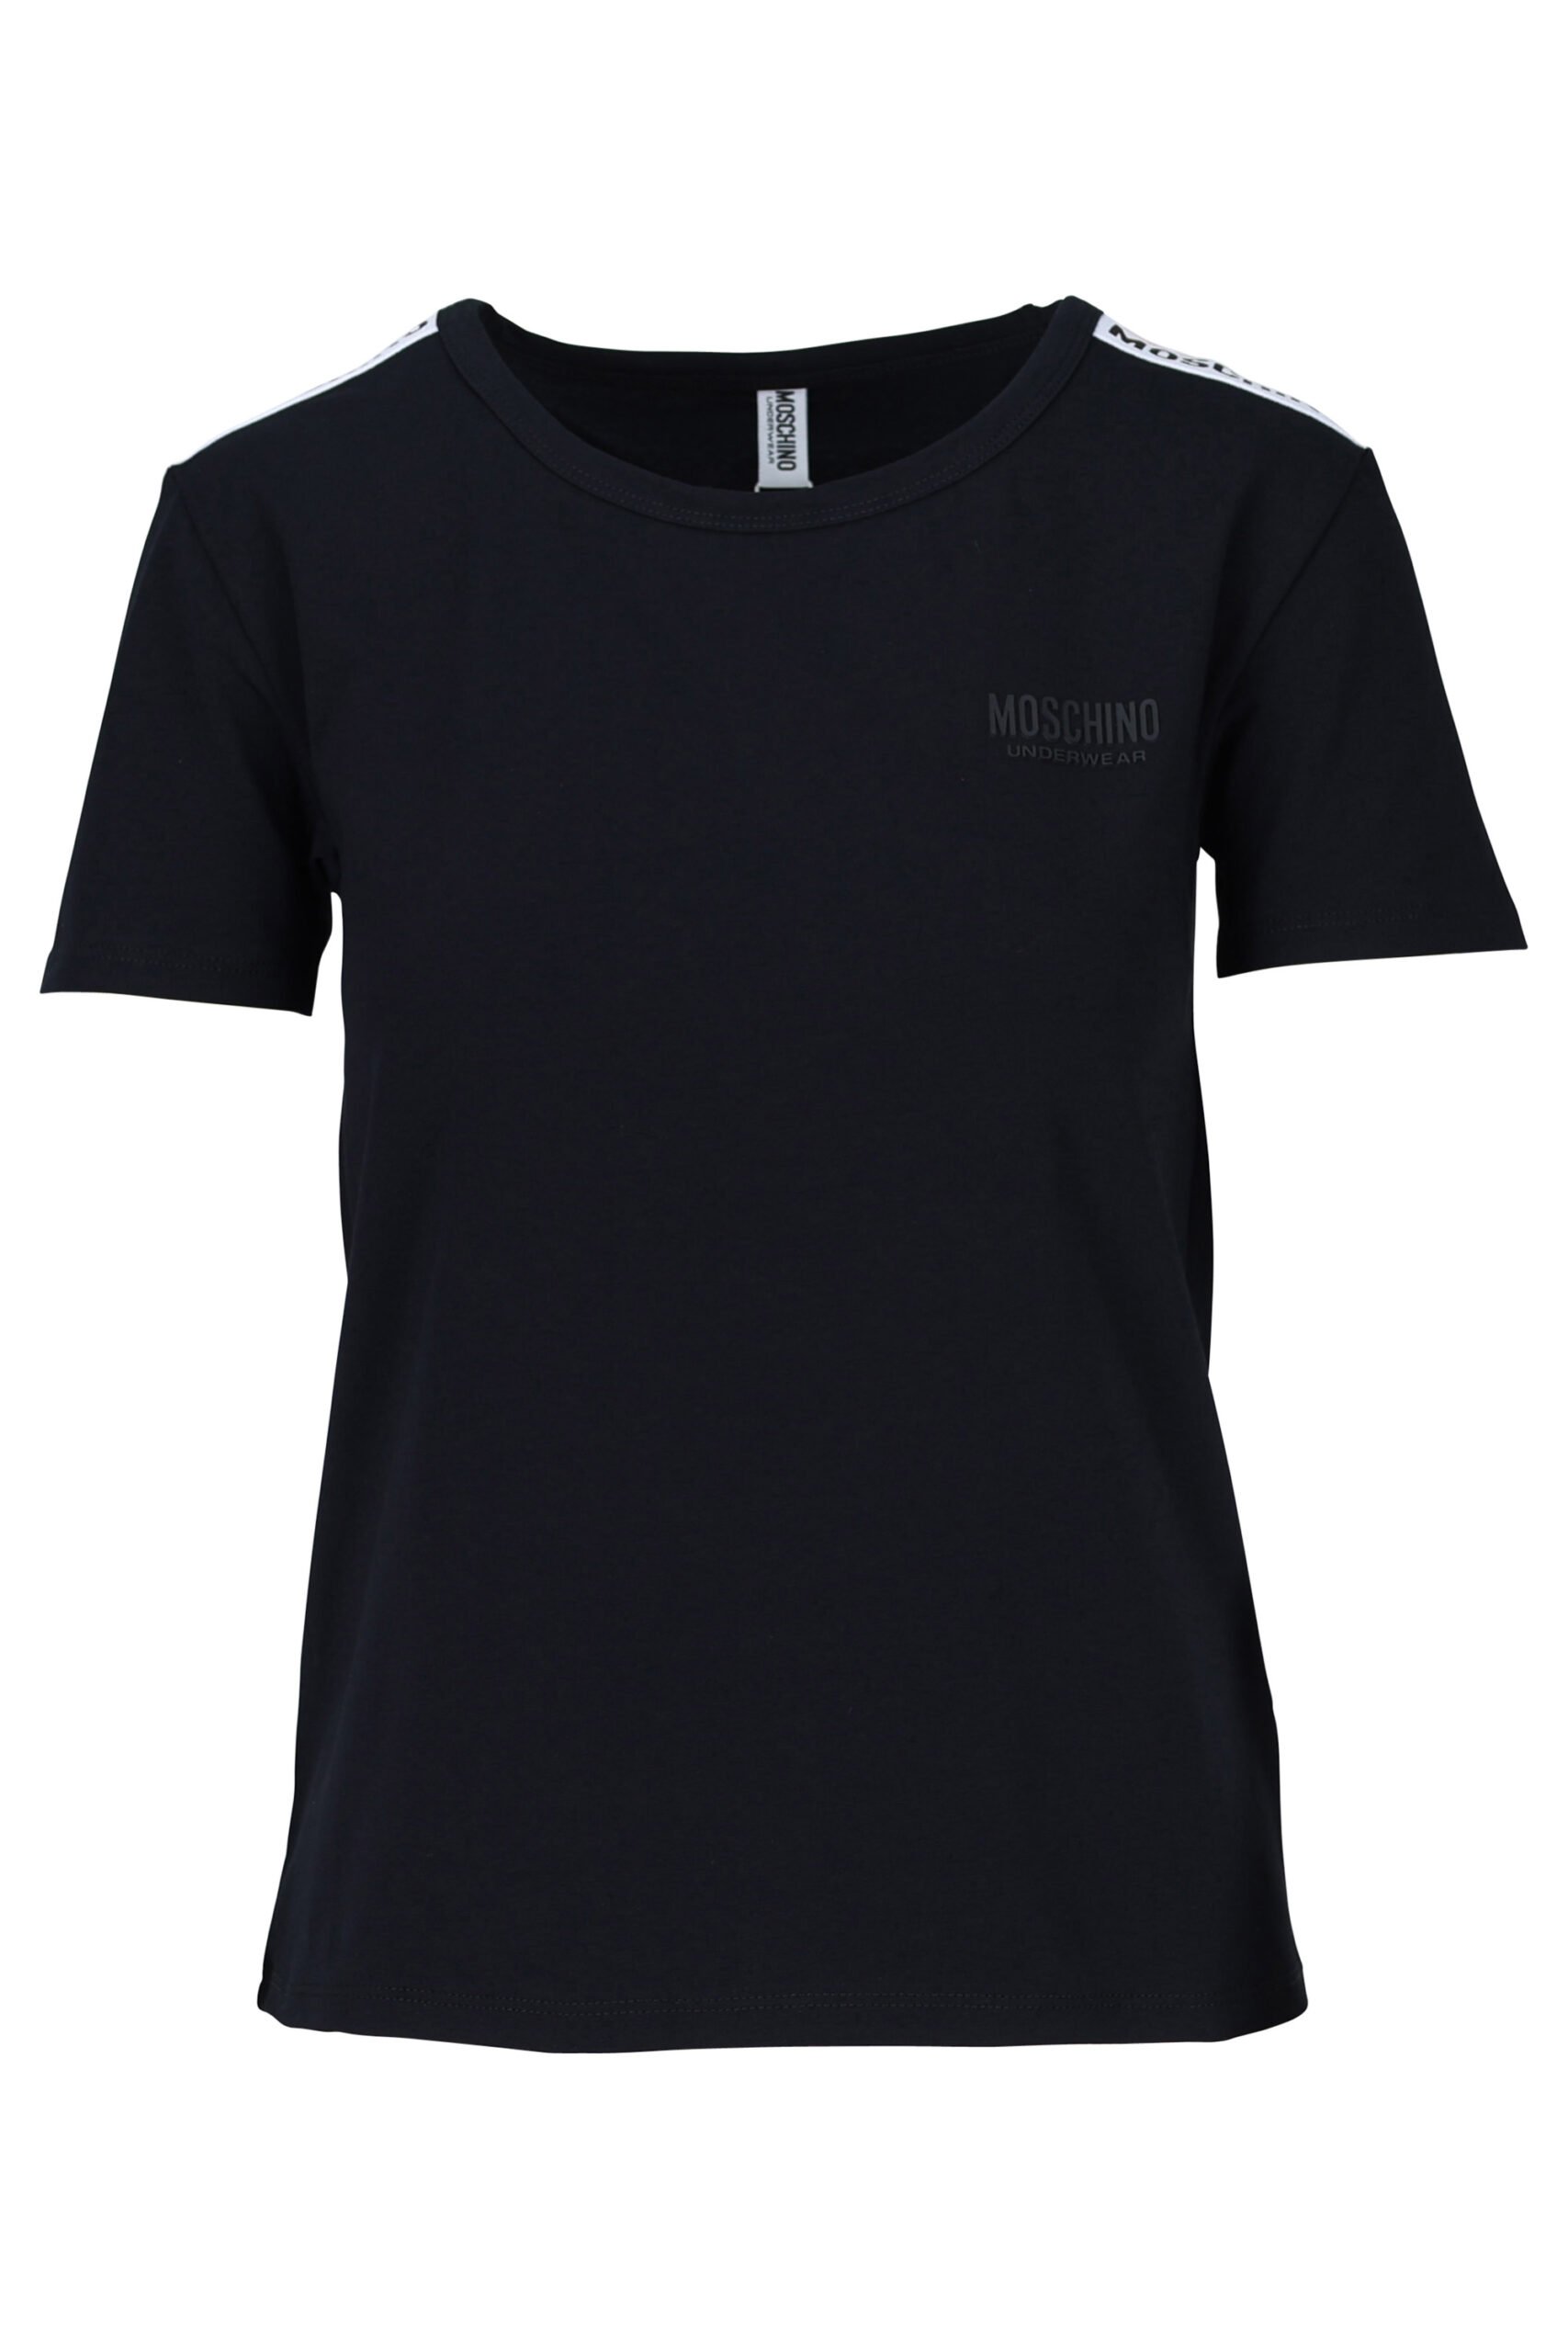 Moschino - Camiseta negra corta con logo oso en cinta blanco - BLS Fashion